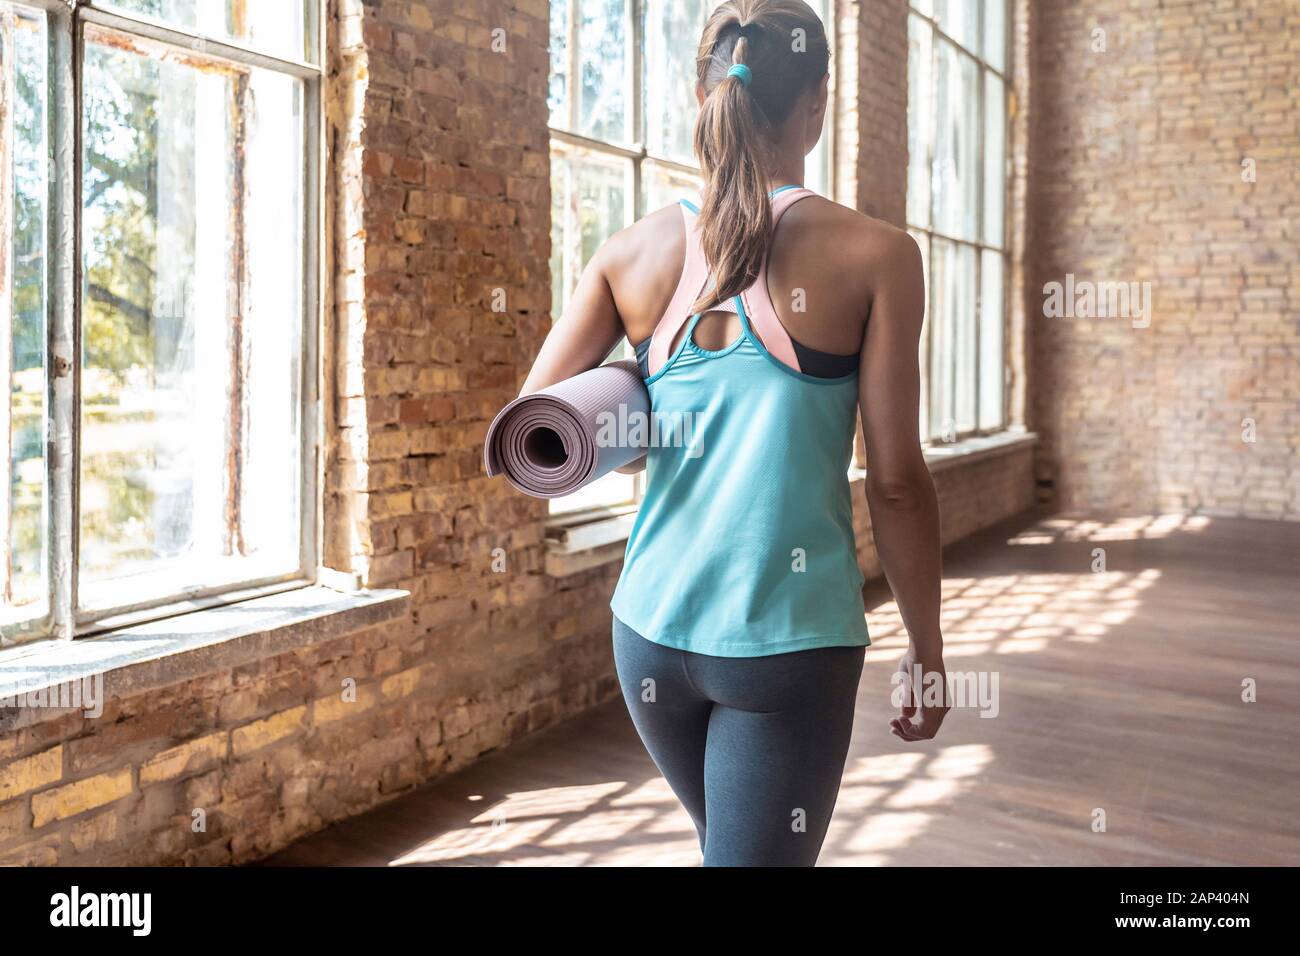 Vue arrière de l'allure sportive fit young woman holding yoga mat laminé walking in gym Banque D'Images